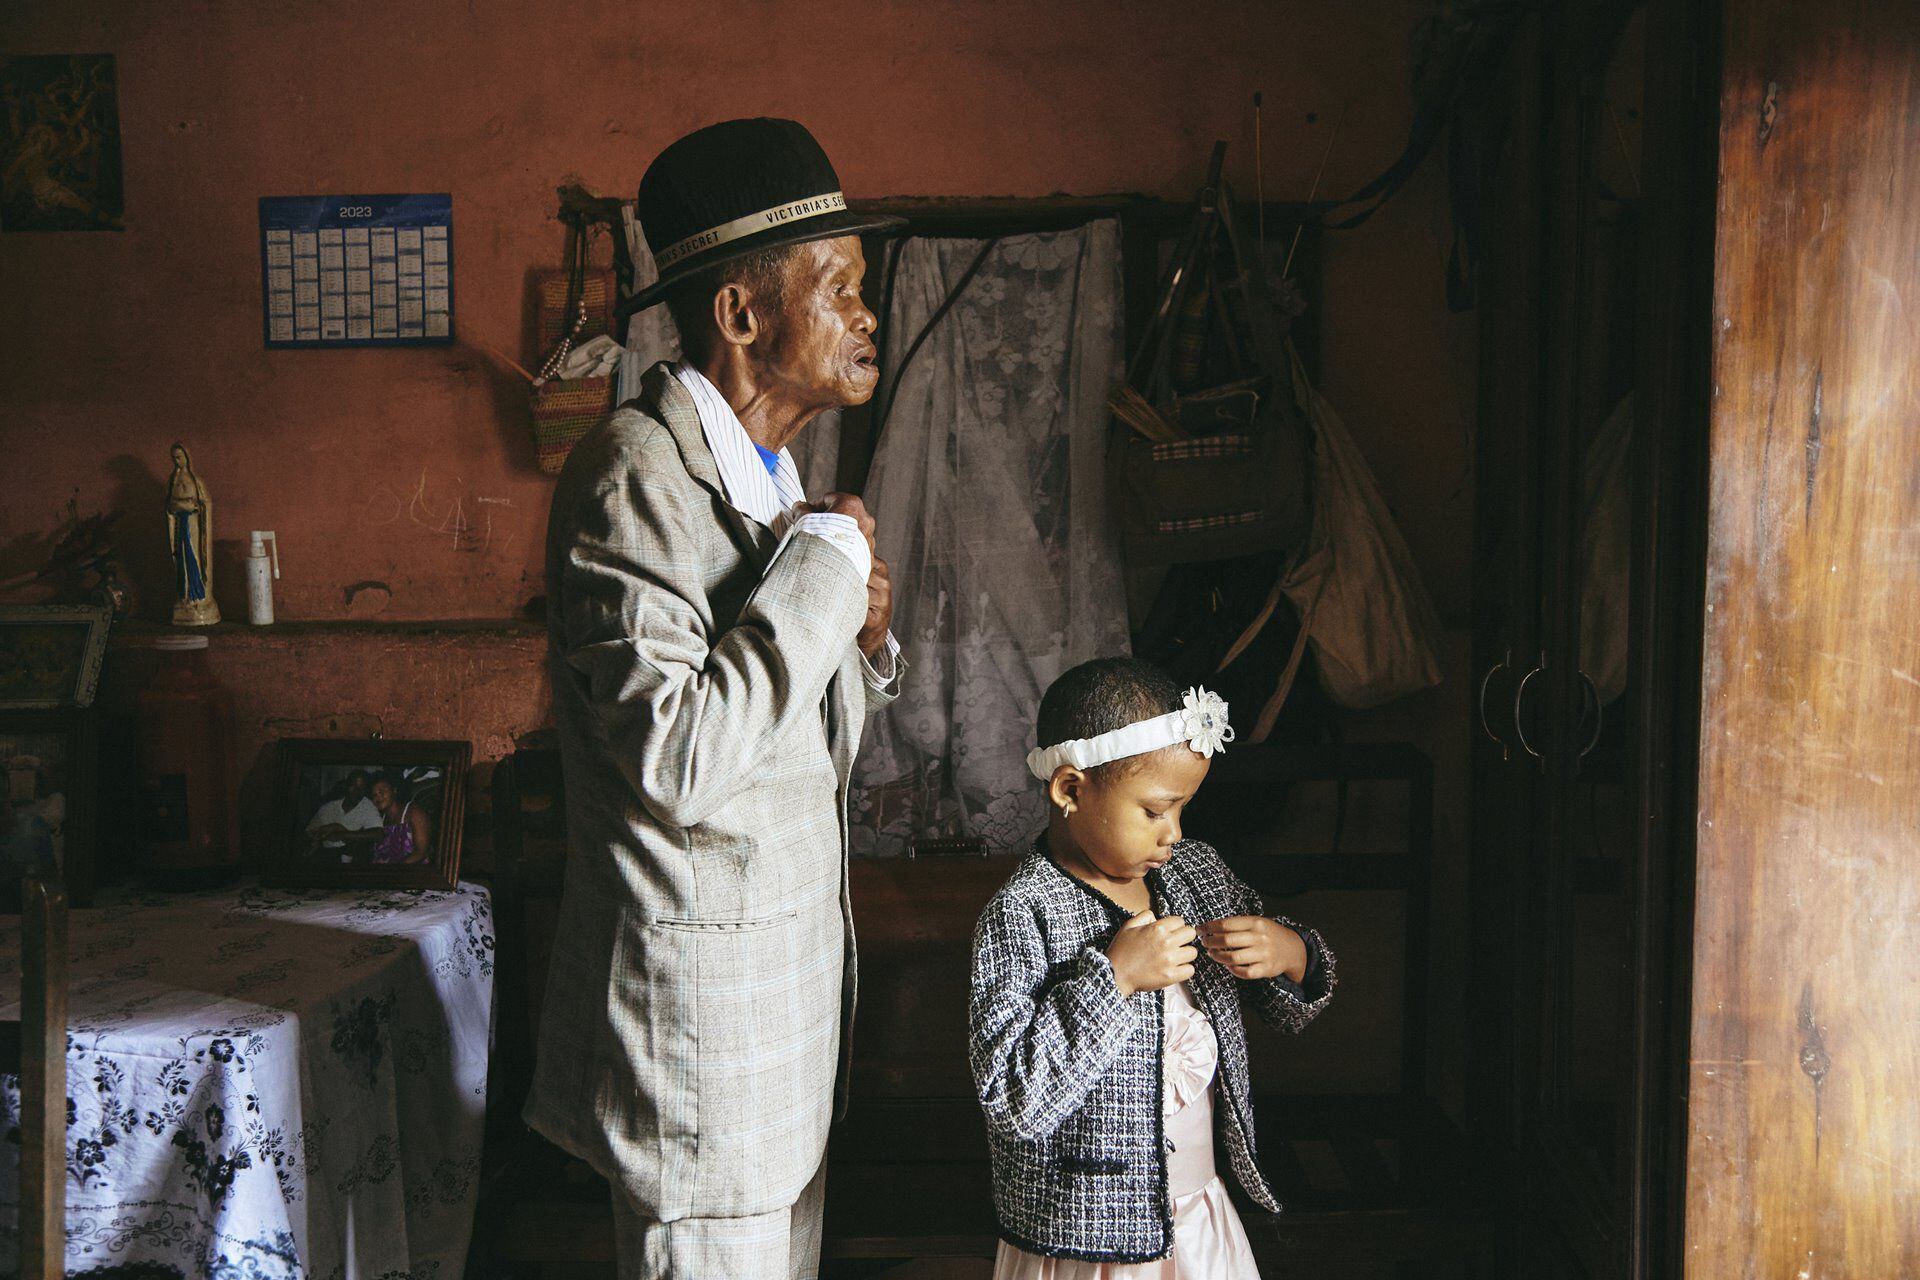 La fotógrafa de GEO, Lee-Ann Olwage, de Sudáfrica ganó la categoría de historia del año con imágenes que documentan la demencia en Madagascar. عکس: Lee-Ann Olwage